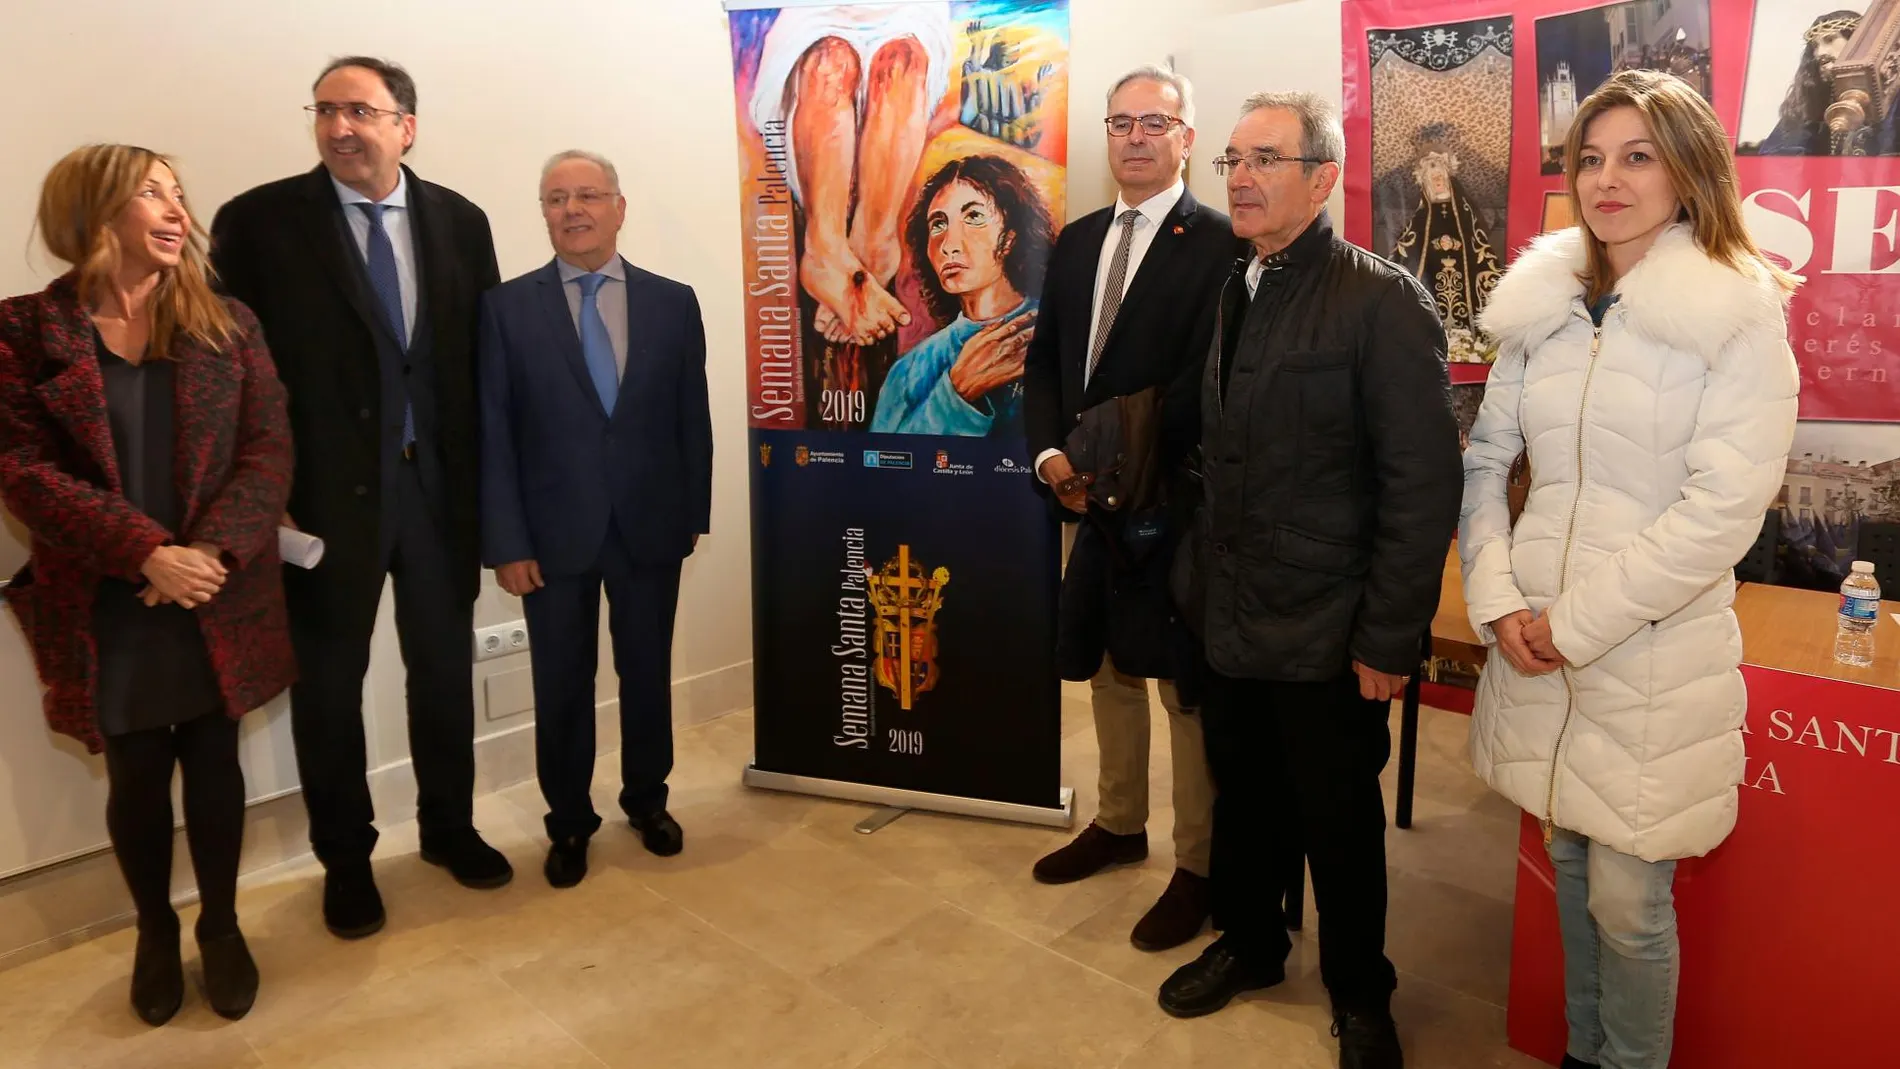 El presidente de la Hermandad de Cofradías de Palencia, Antonio Motila, y el alcalde de Palencia, Alfonso Polanco, entre otros, presenta la Semana Santa 2019 en la ciudad